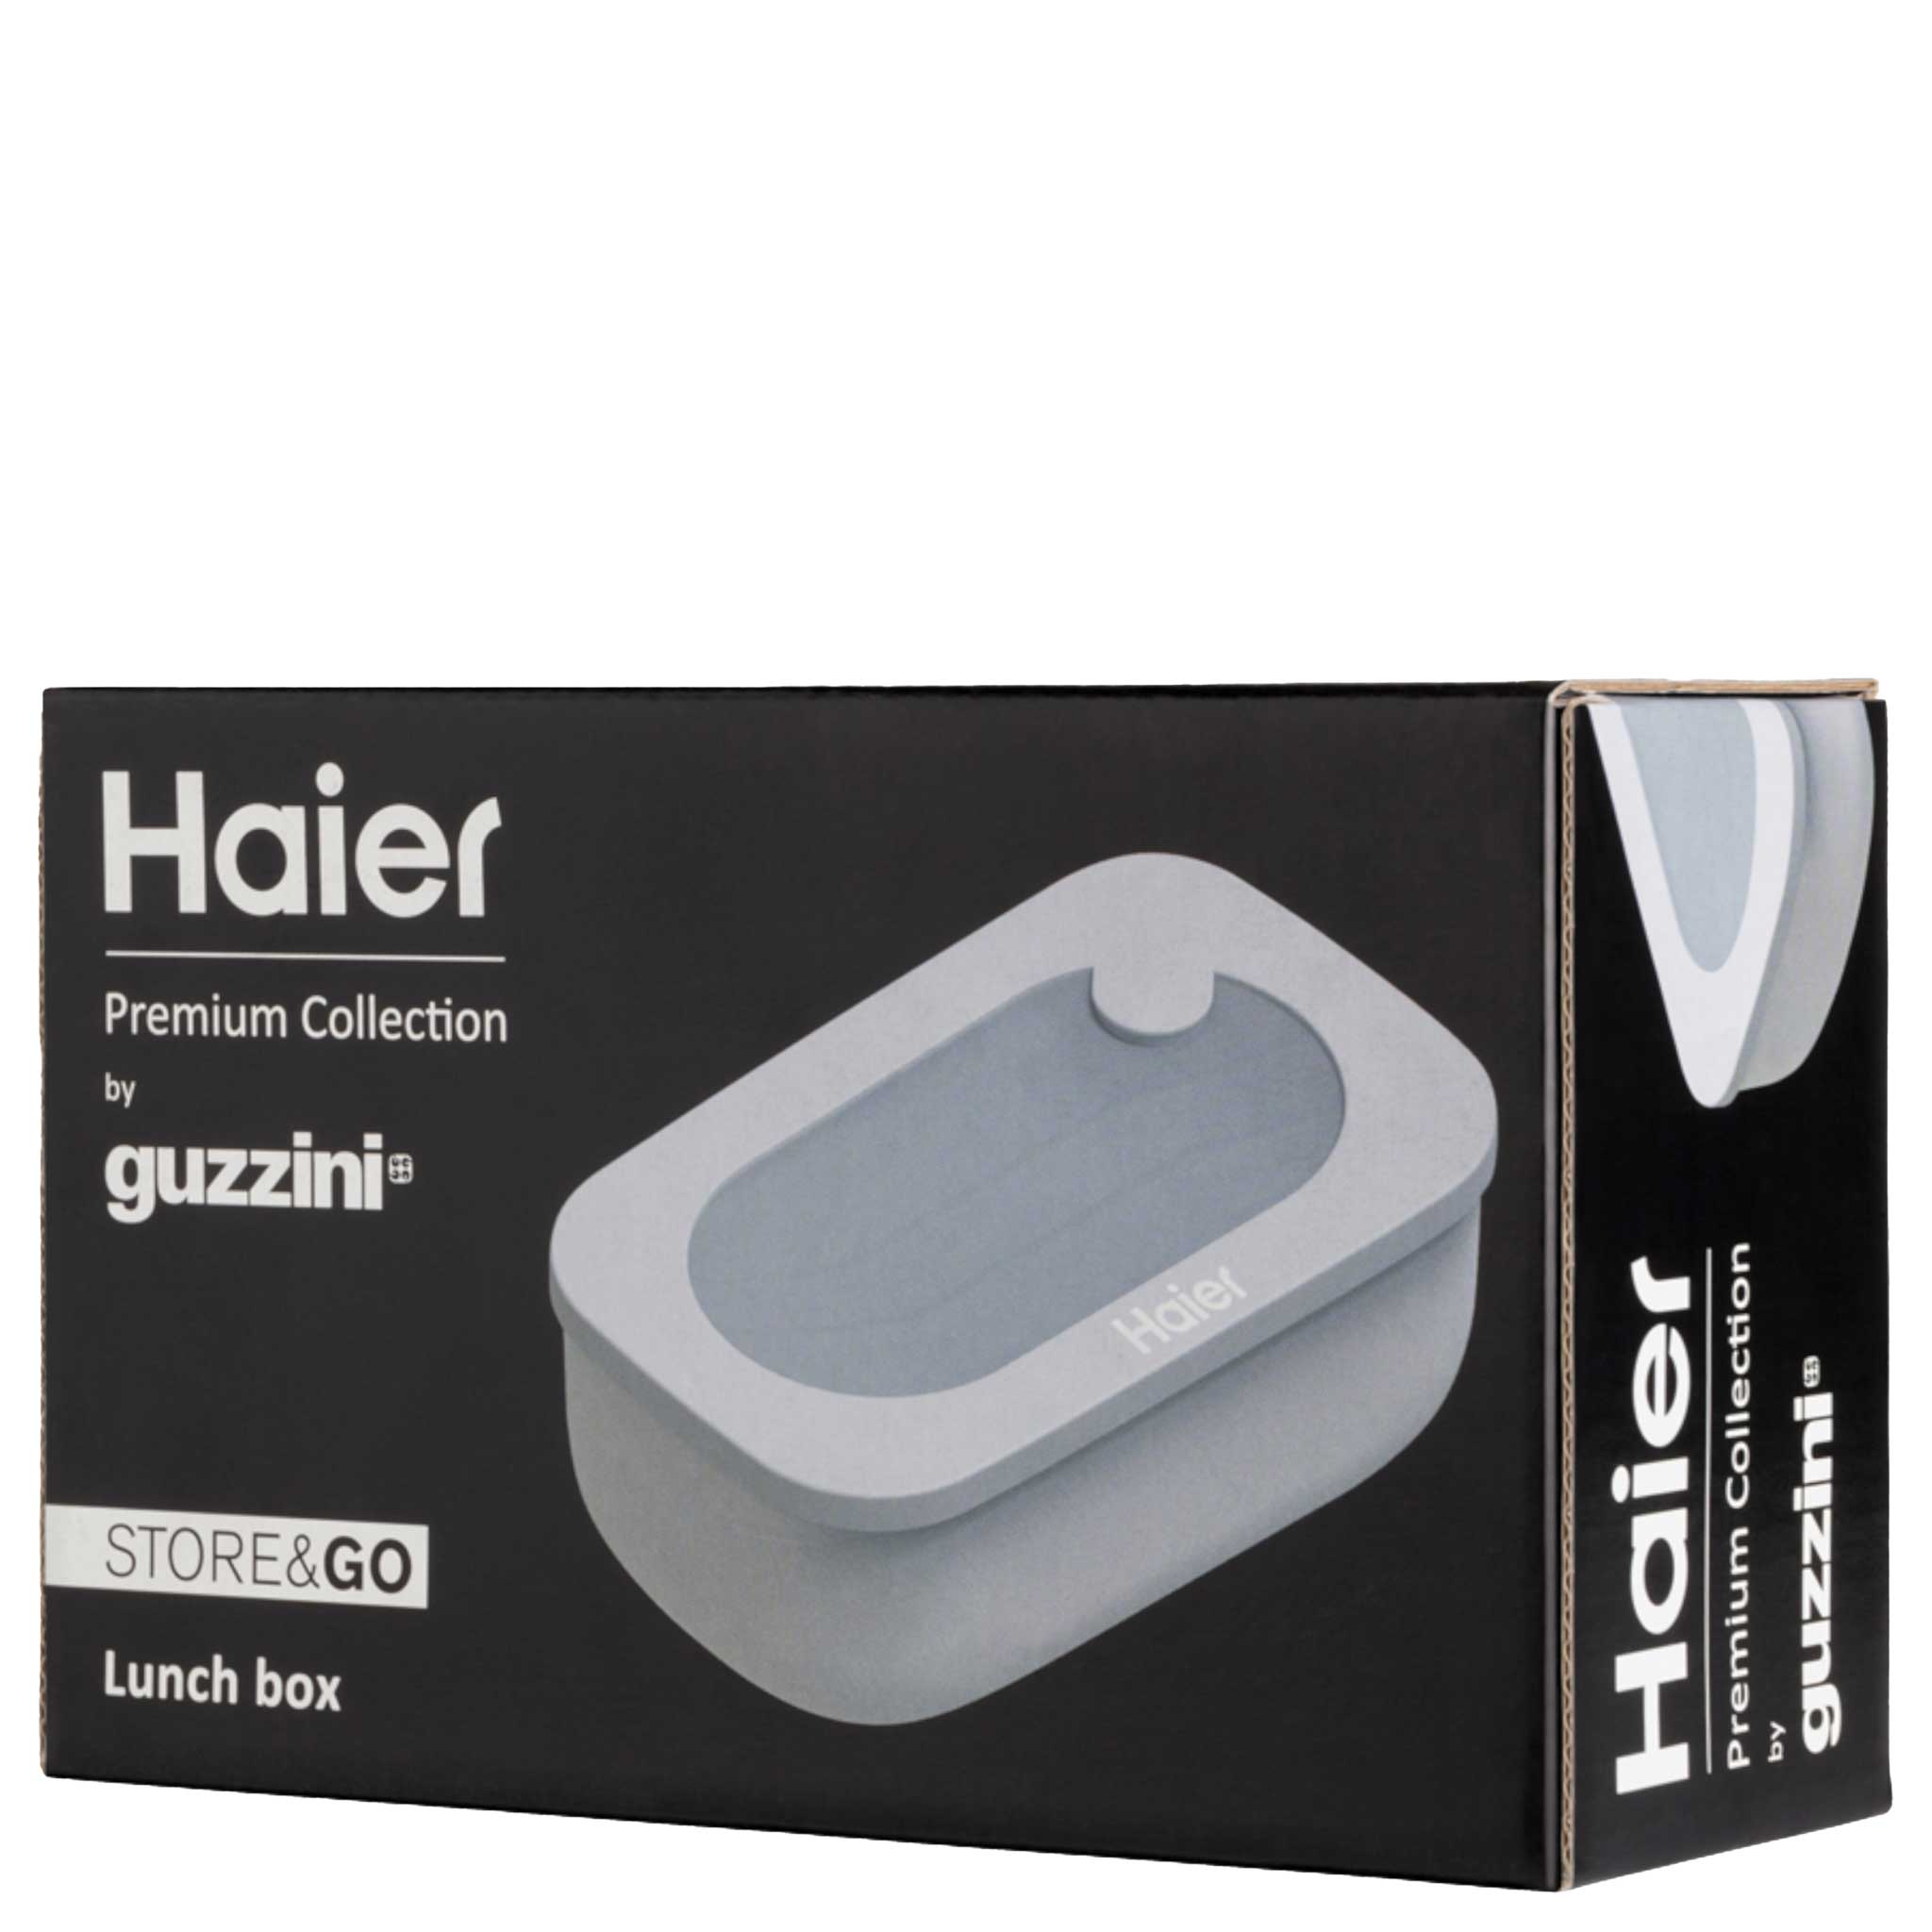 Haier by Guzzini Elegant Lunch Box